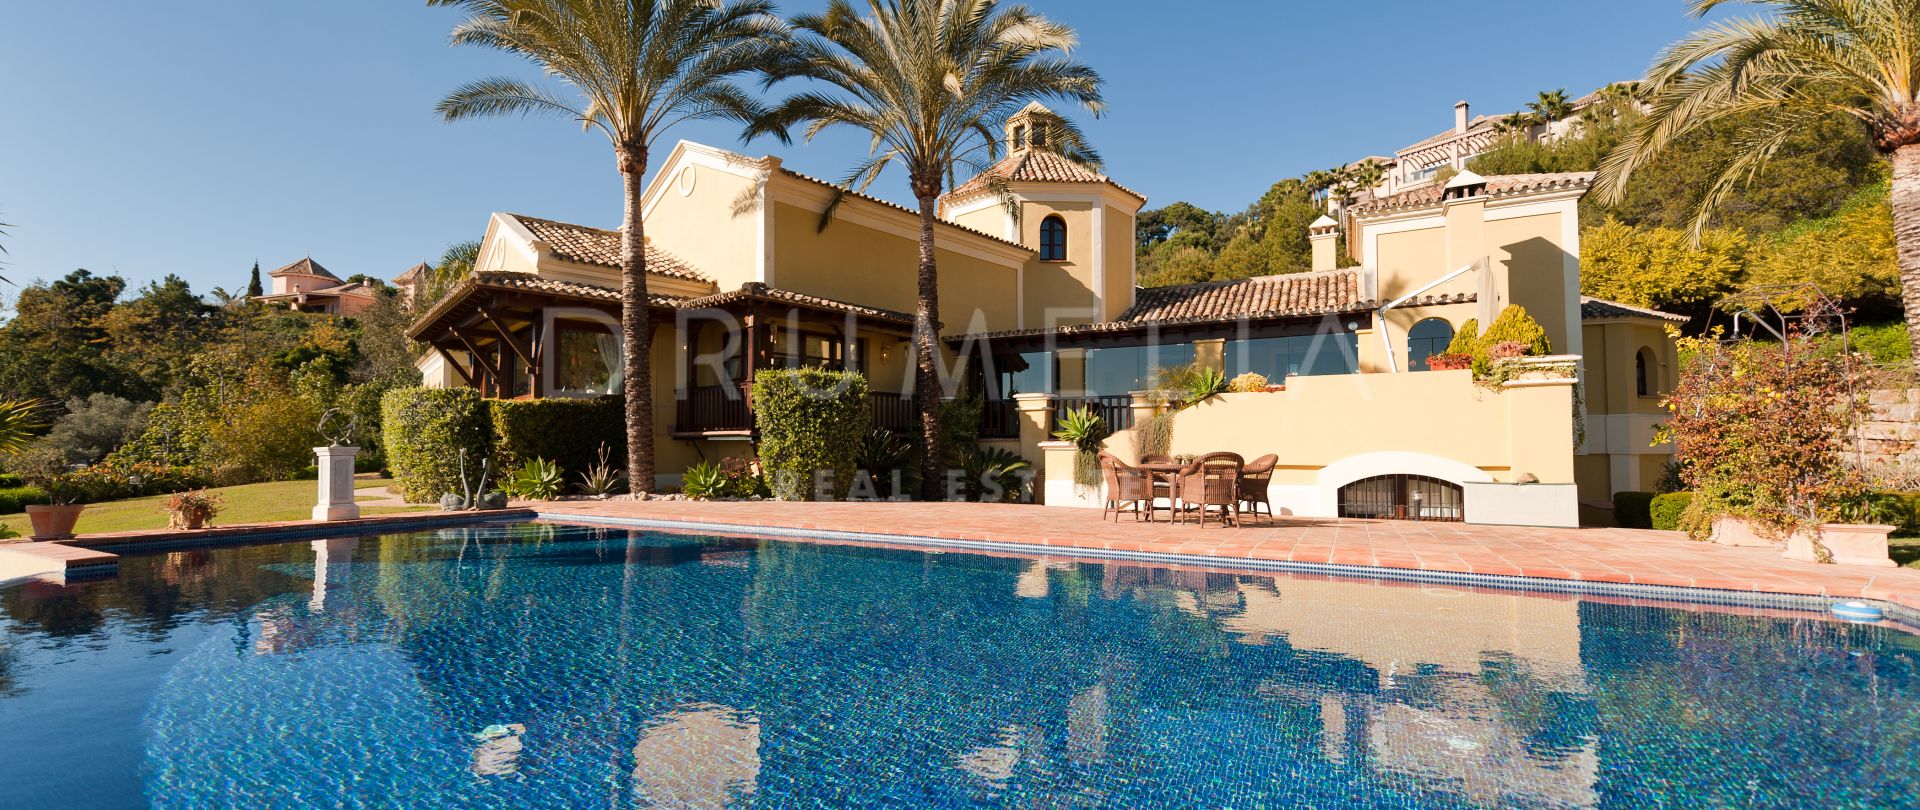 Klassieke Spaanse luxe villa met betoverende charme in Zagaleta